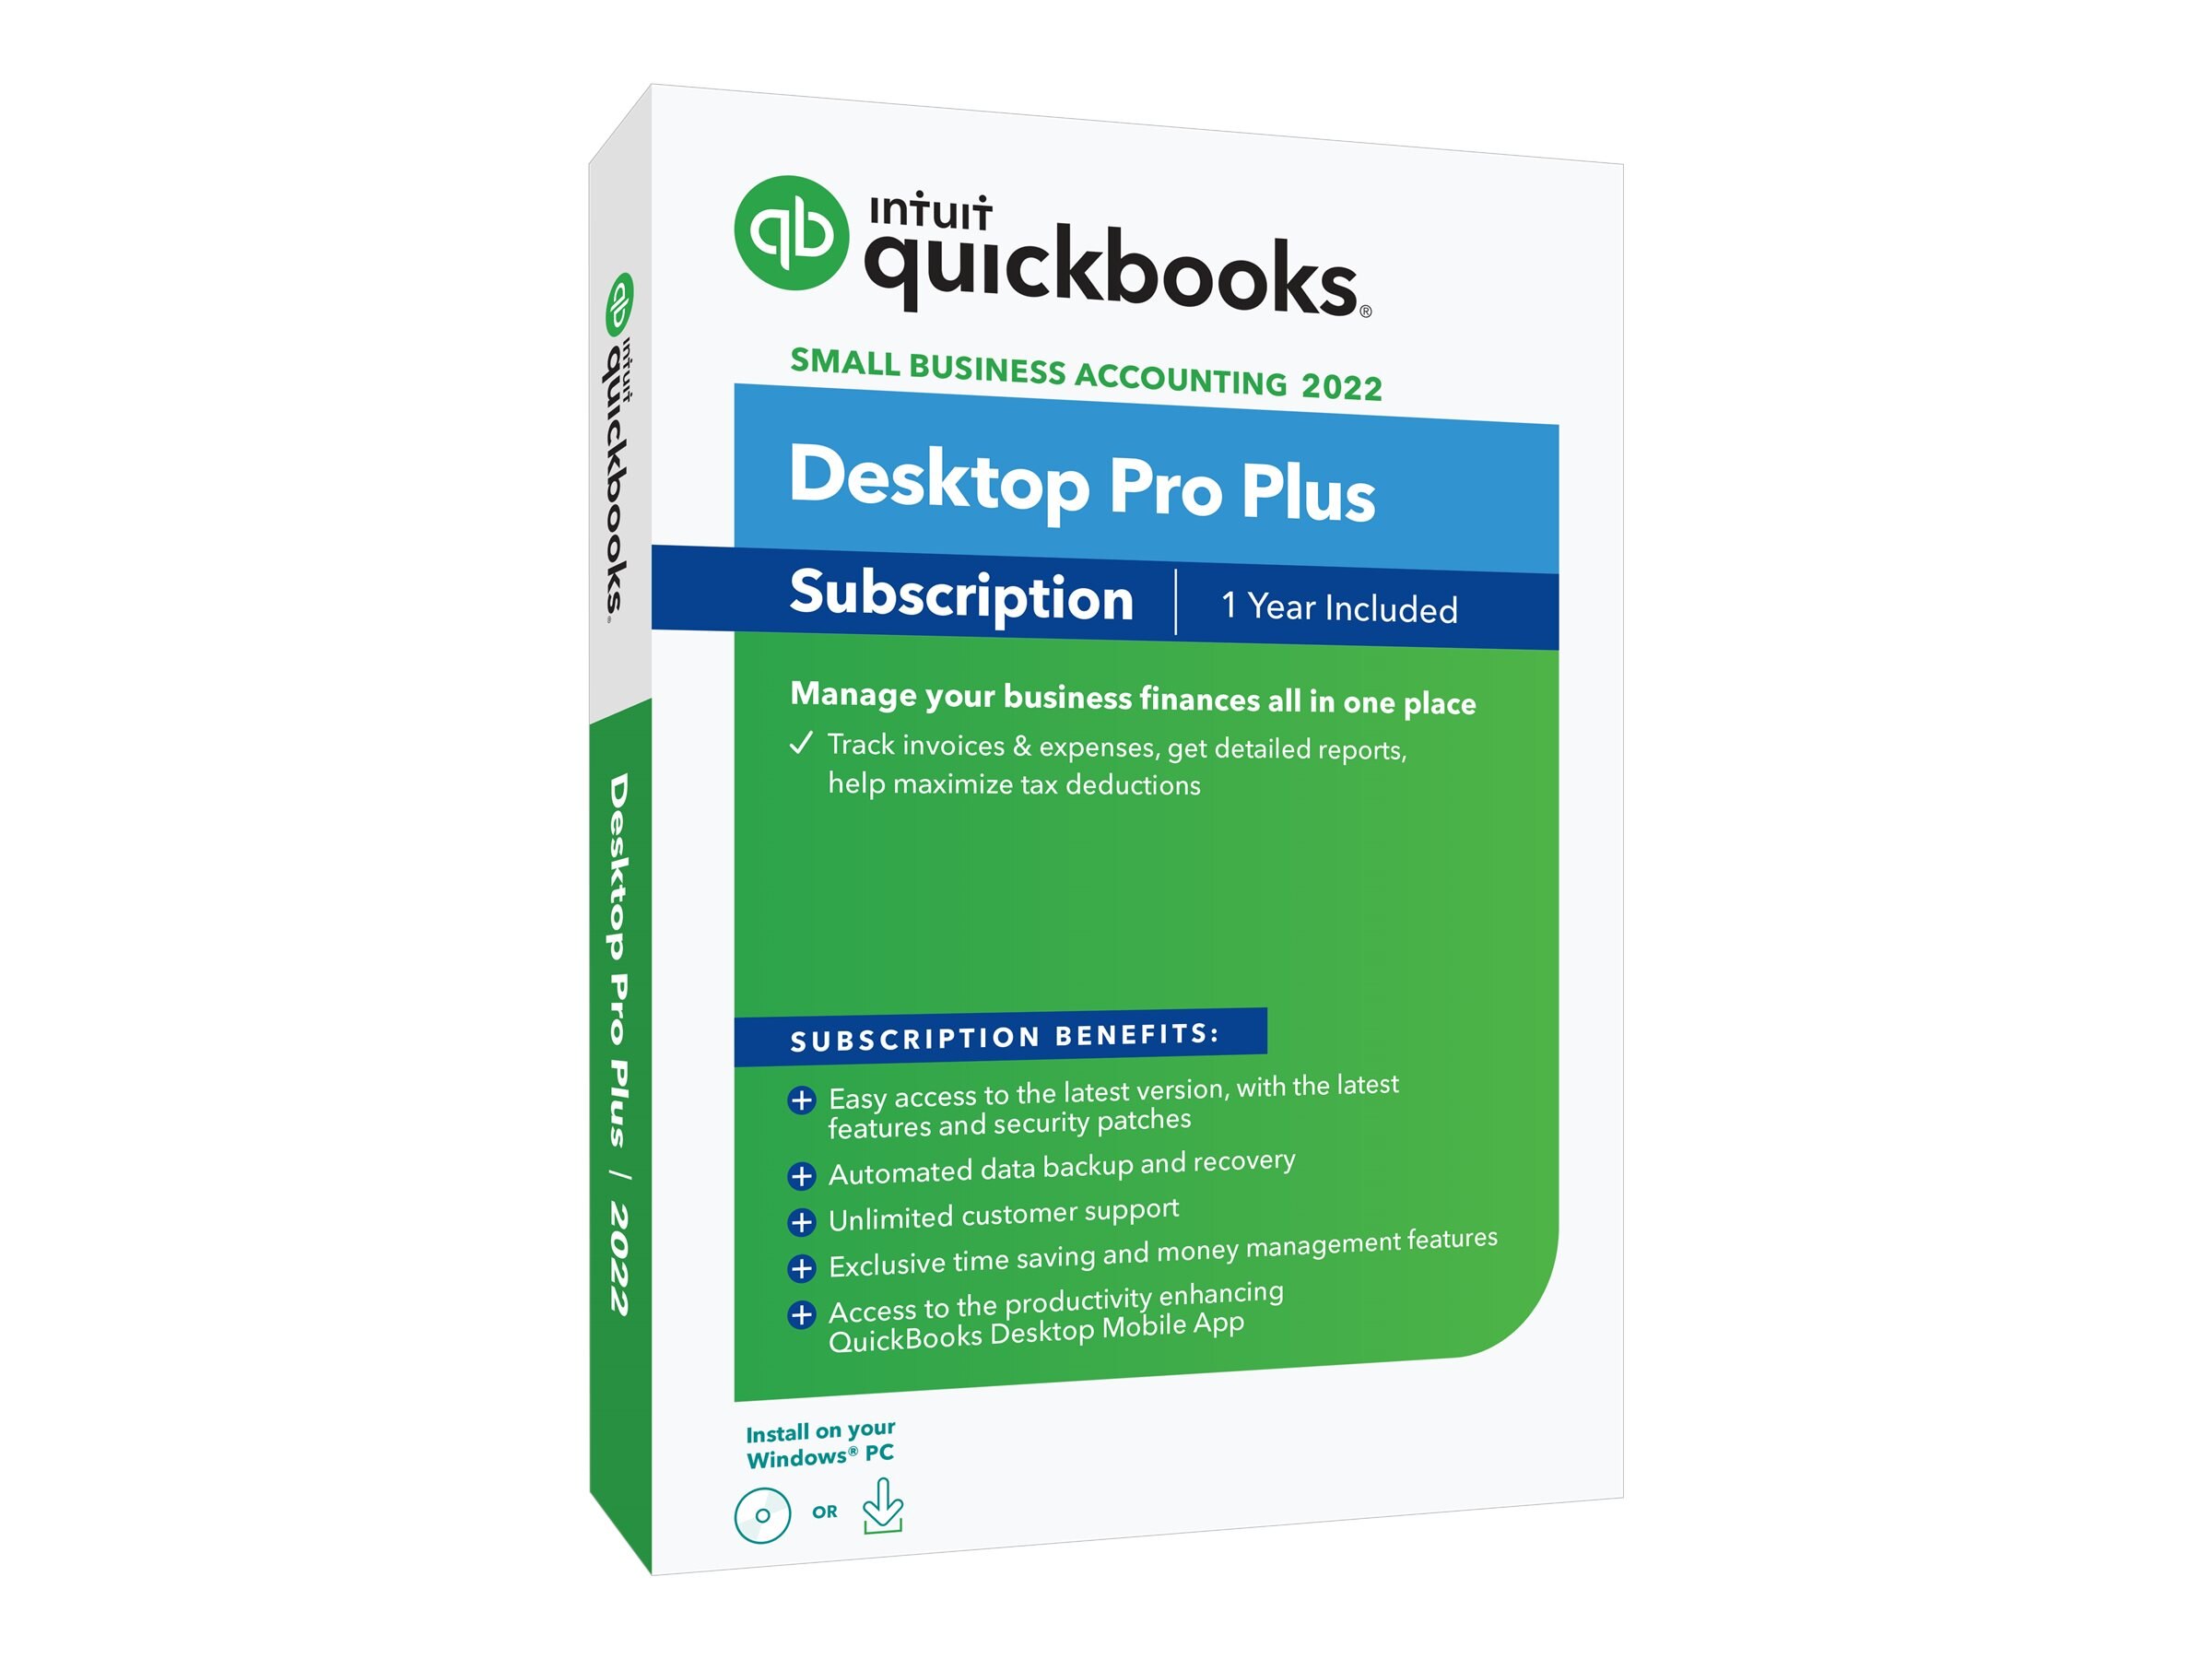 quickbooks for mac desktop 2012